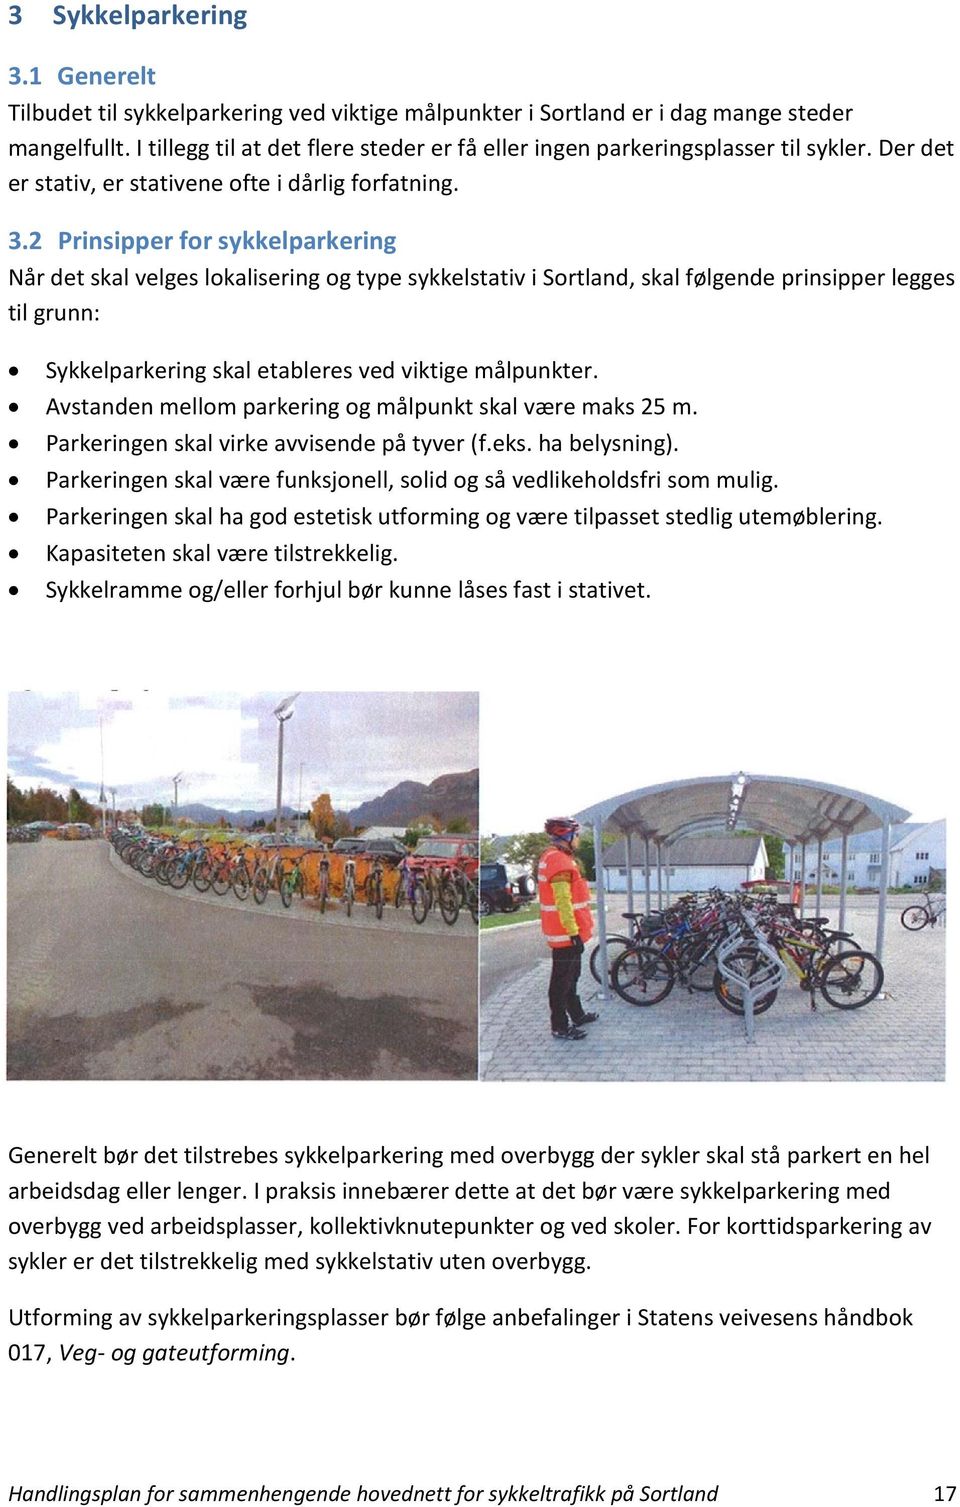 2 Prinsipper for sykkelparkering Når det skal velges lokalisering og type sykkelstativ i Sortland, skal følgende prinsipper legges til grunn: Sykkelparkering skal etableres ved viktige målpunkter.